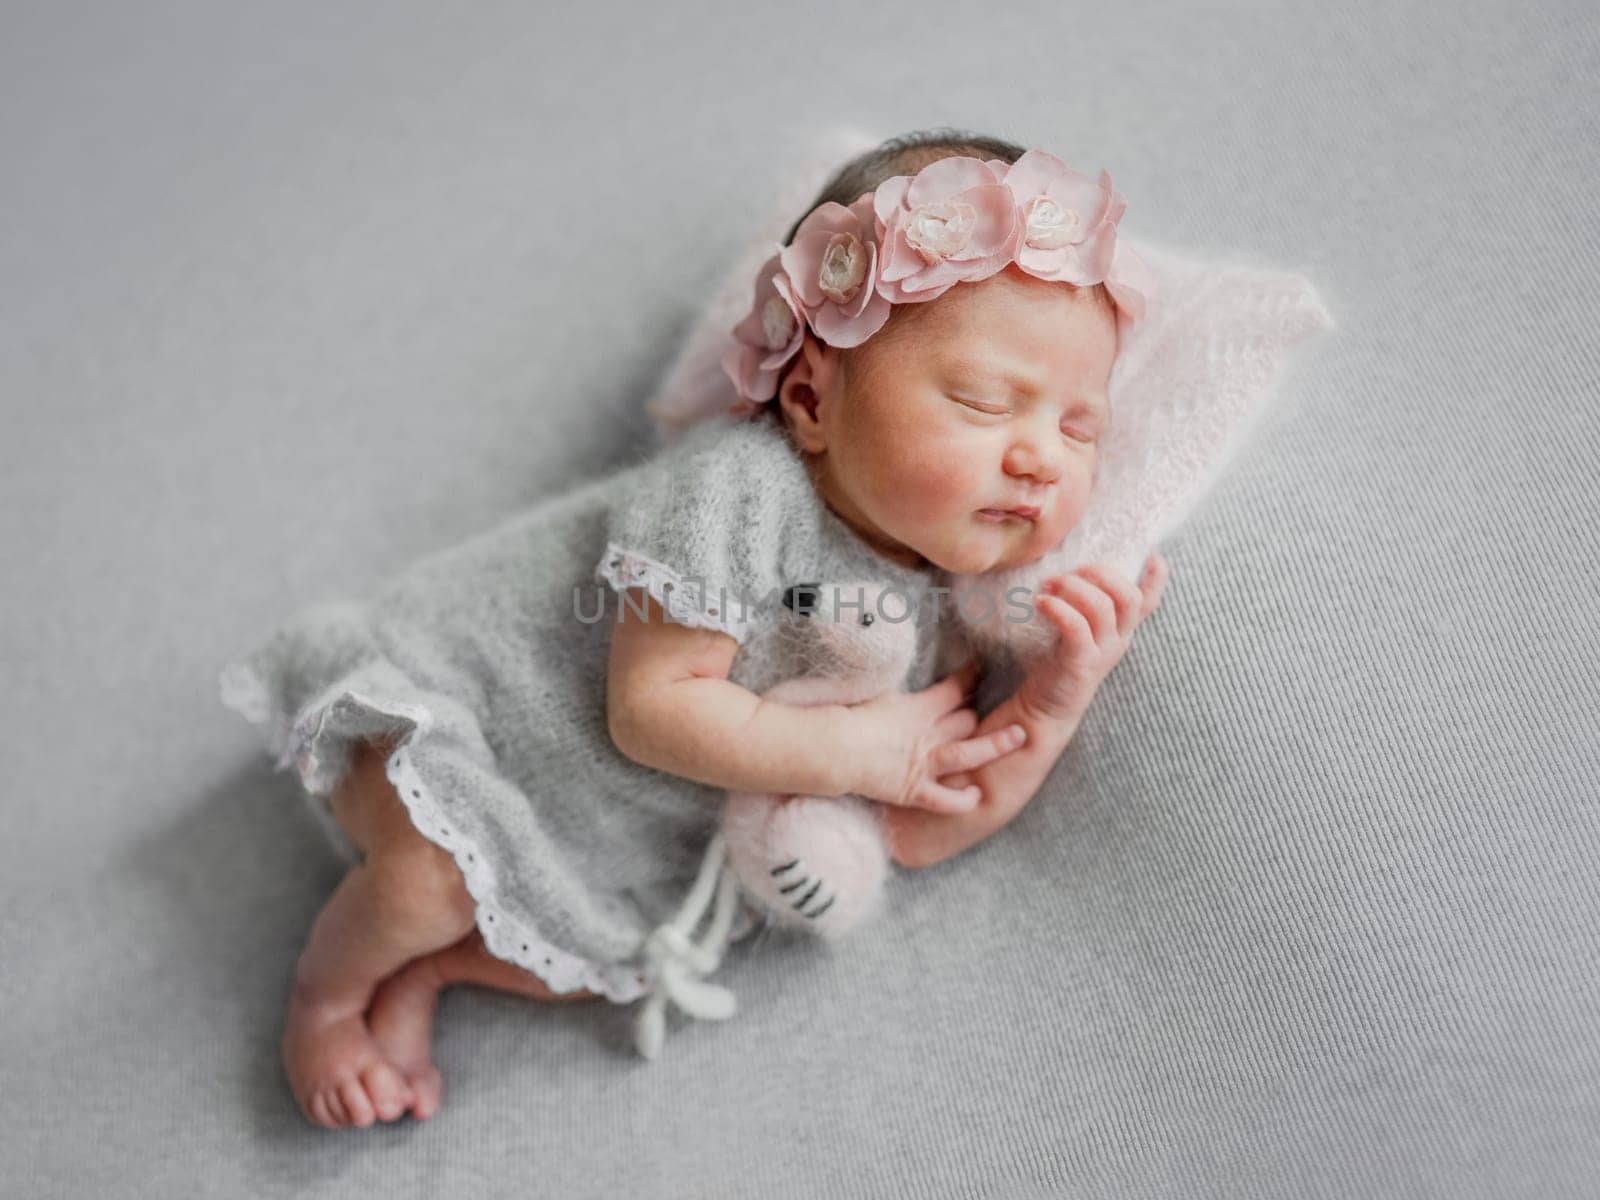 Newborn Girl Sleeps In Gray Dress With Flamingo Toy by tan4ikk1